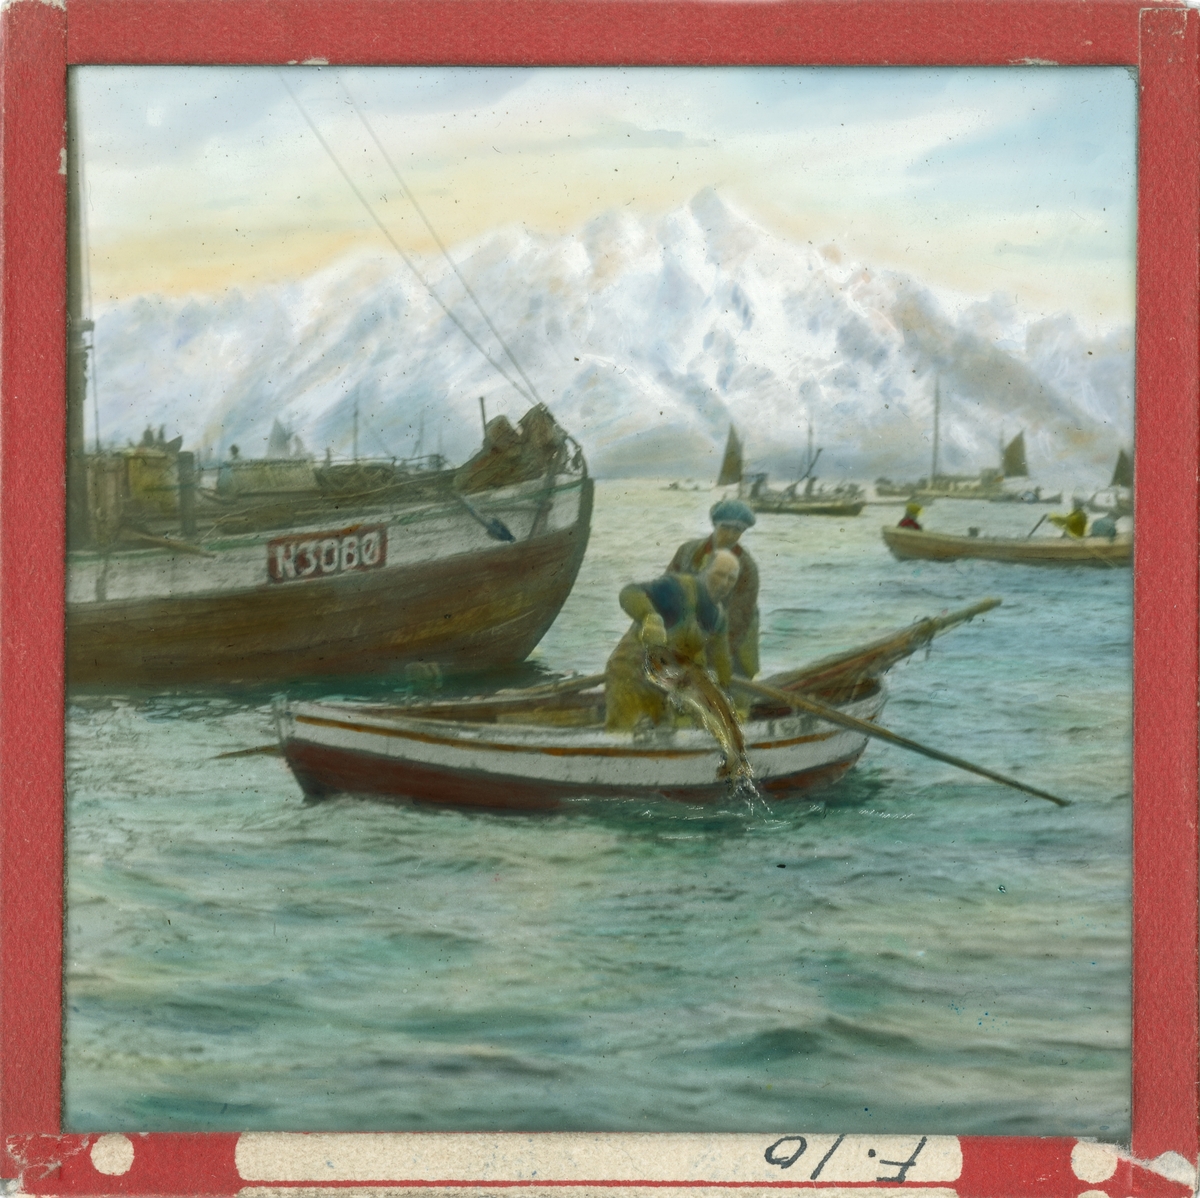 Håndkolorert lysbilde. To menn i en liten robåt drar opp en fisk fra havet. Det er flere fiskebåter på sjøen. I bakgrunnen ses fjell med snø.